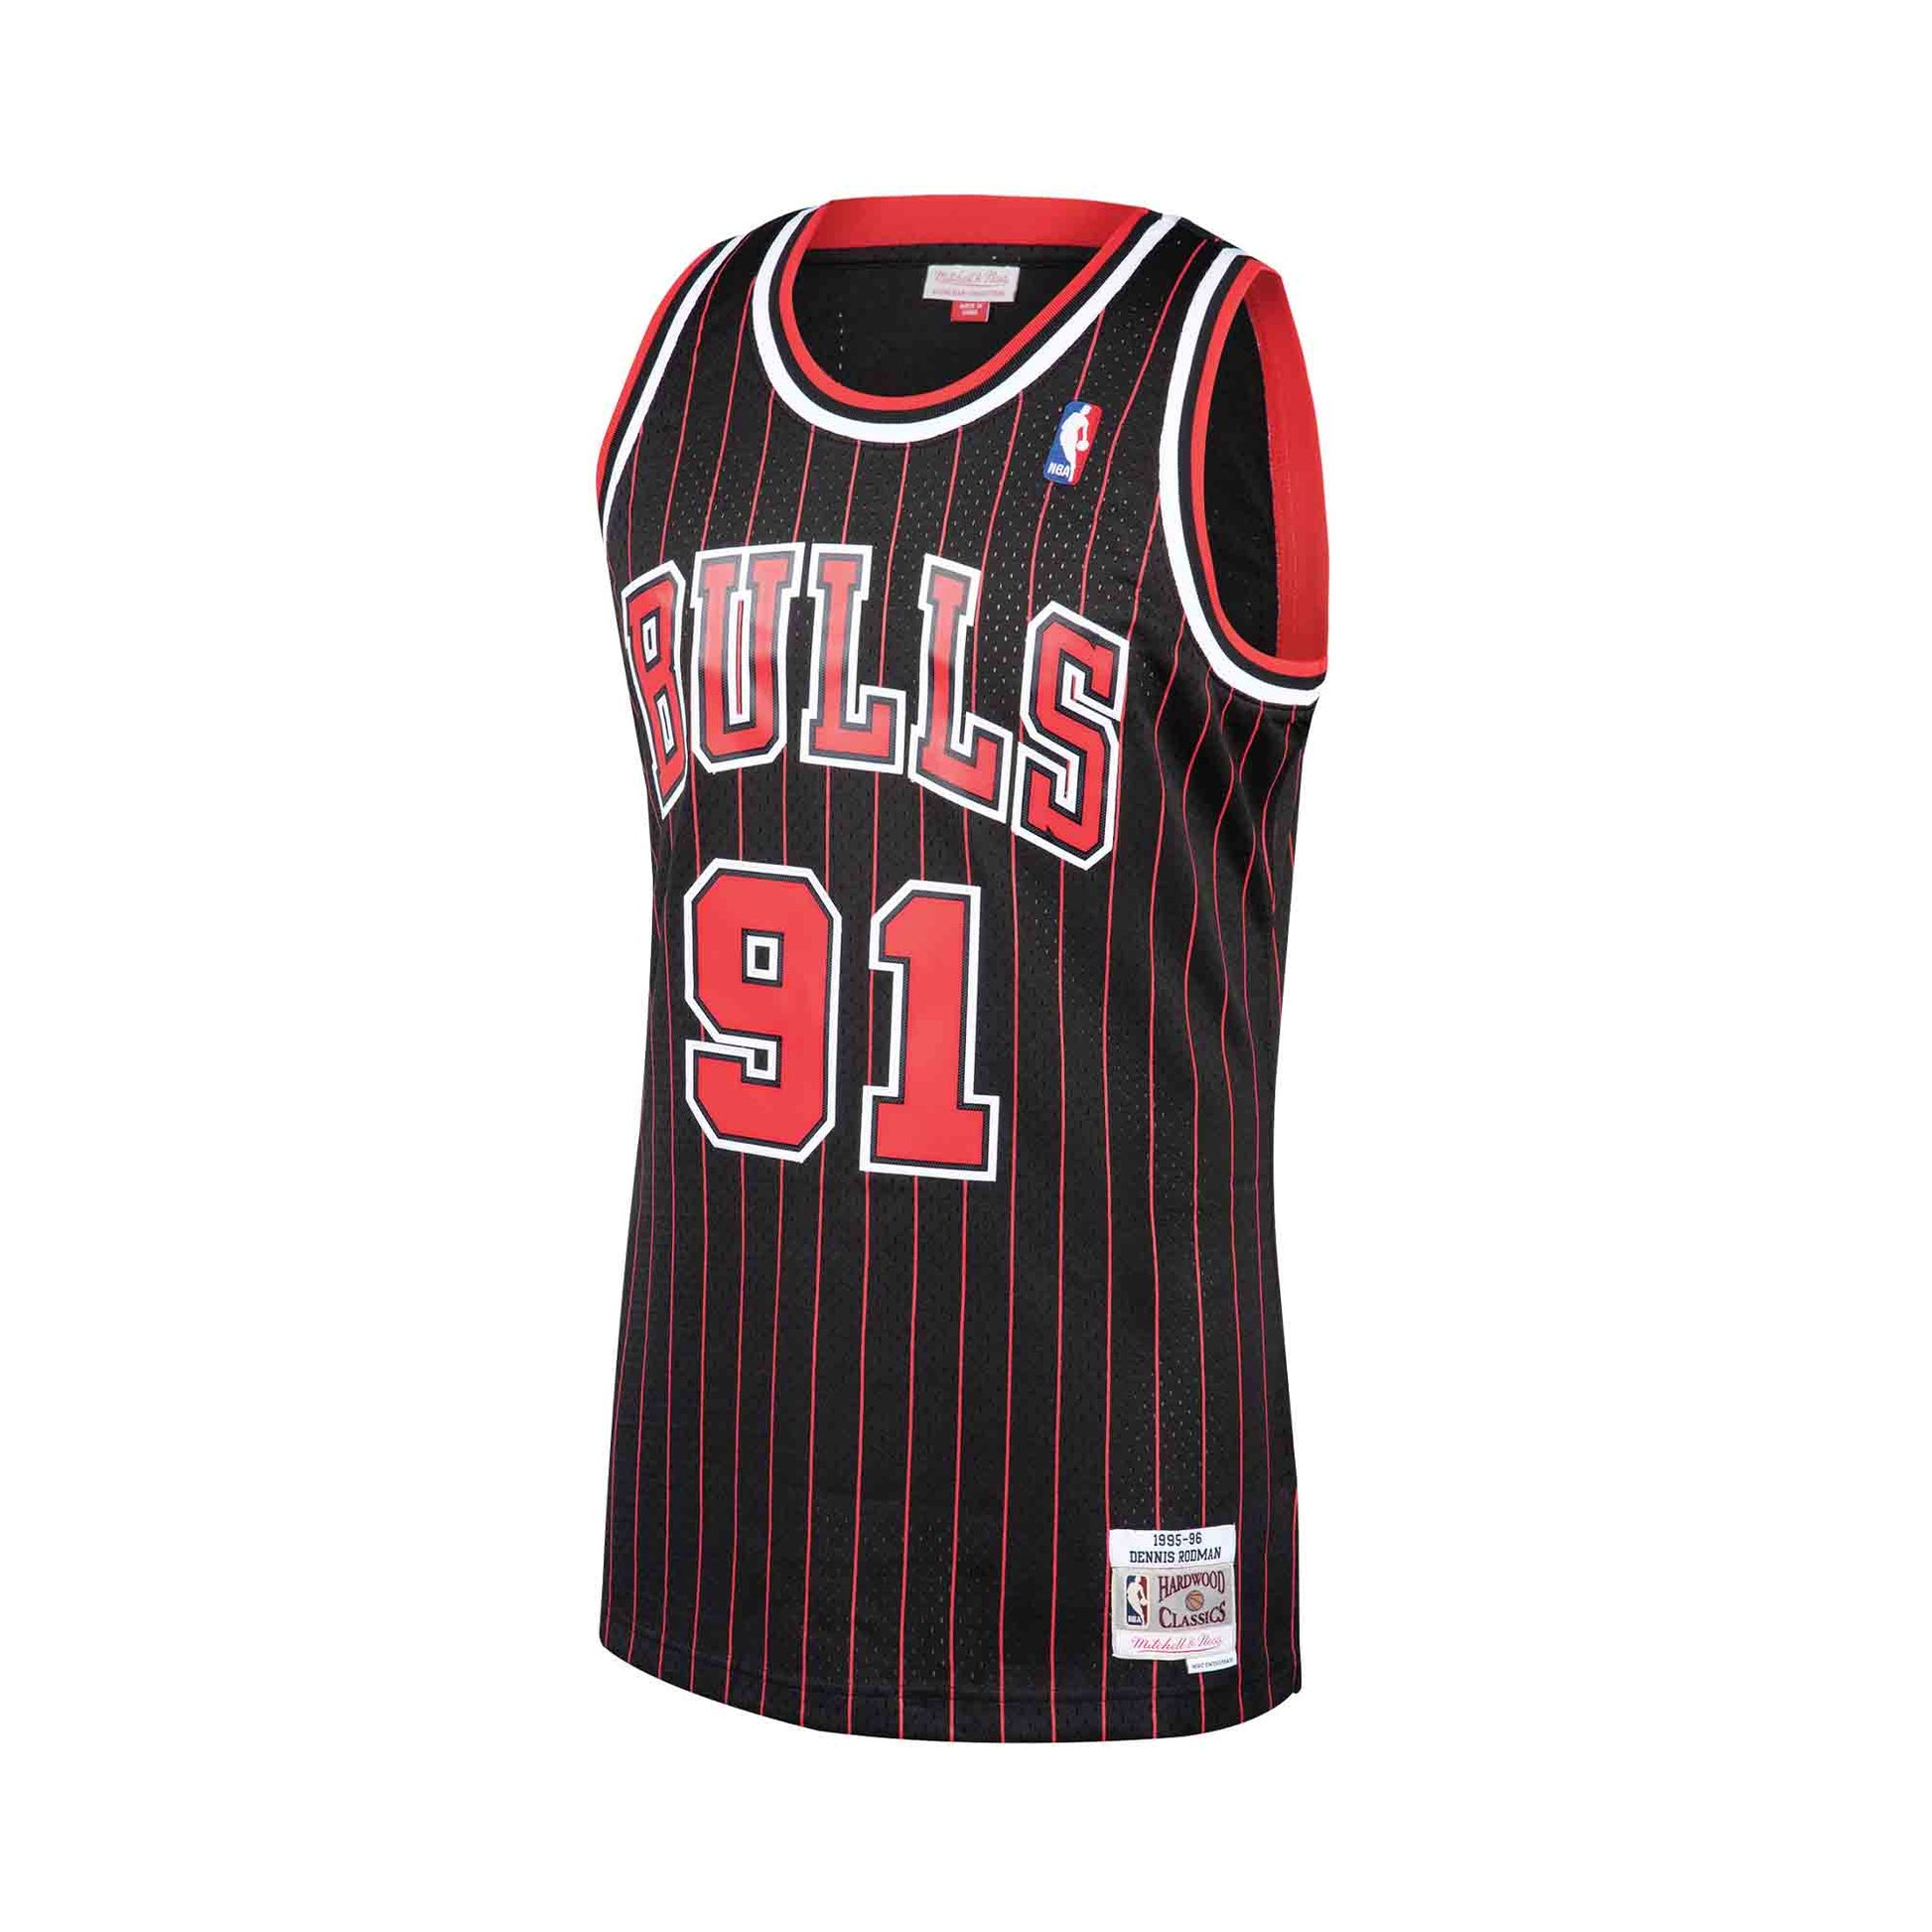 Home Rodman #91 - Bulls Basketball - T-Shirt